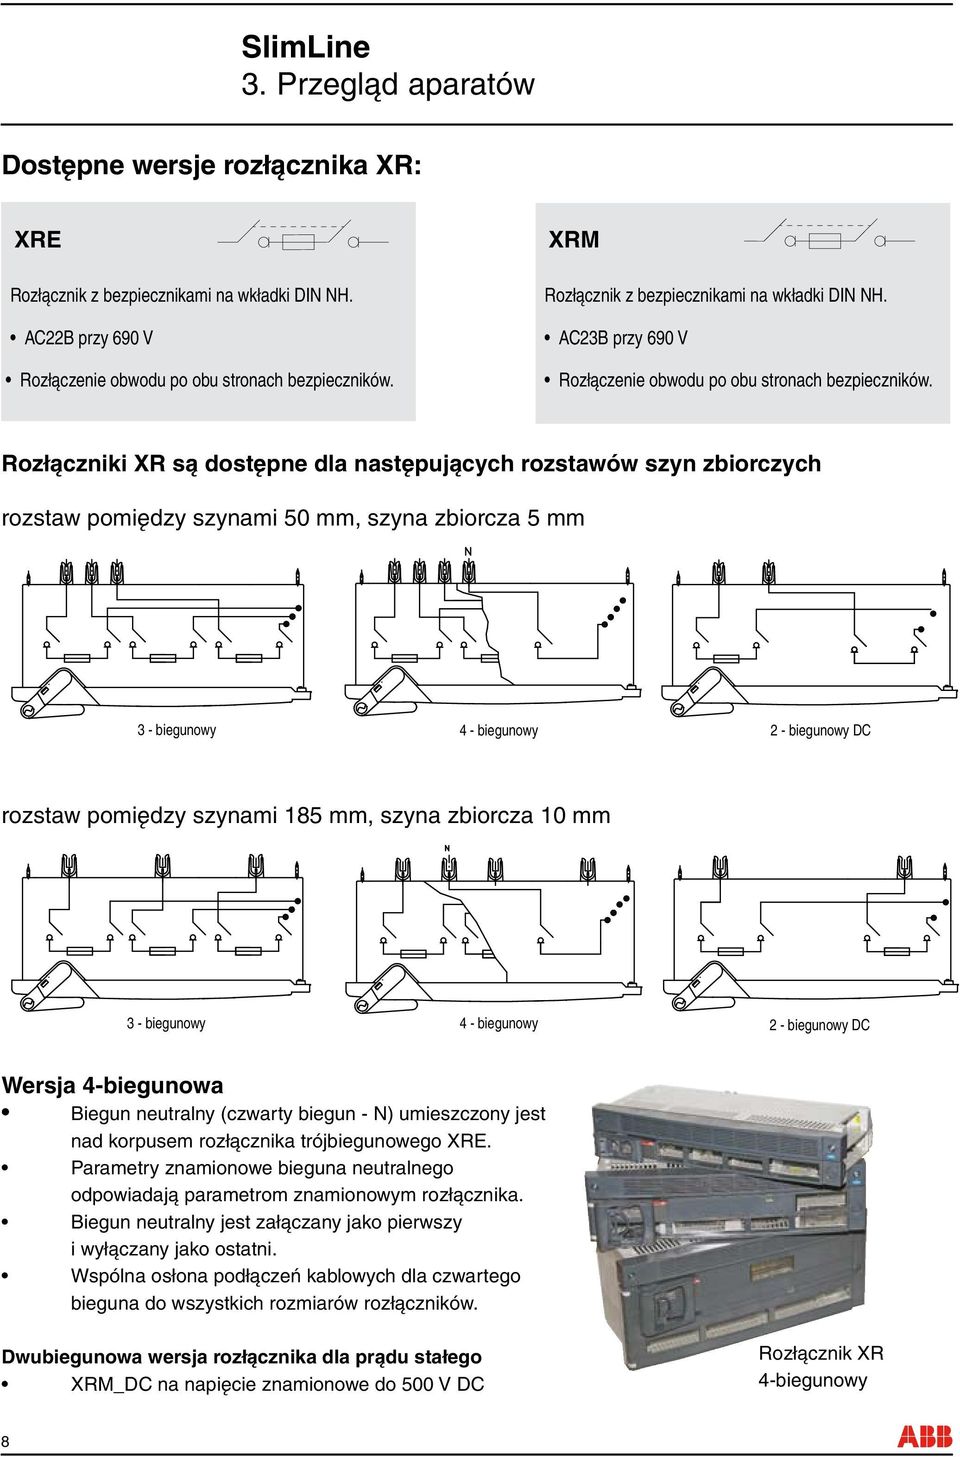 Rozłączniki XR są dostępne dla następujących rozstawów szyn zbiorczych rozstaw pomiędzy szynami 50 mm, szyna zbiorcza 5 mm 3 - biegunowy 4 - biegunowy 2 - biegunowy DC rozstaw pomiędzy szynami 185